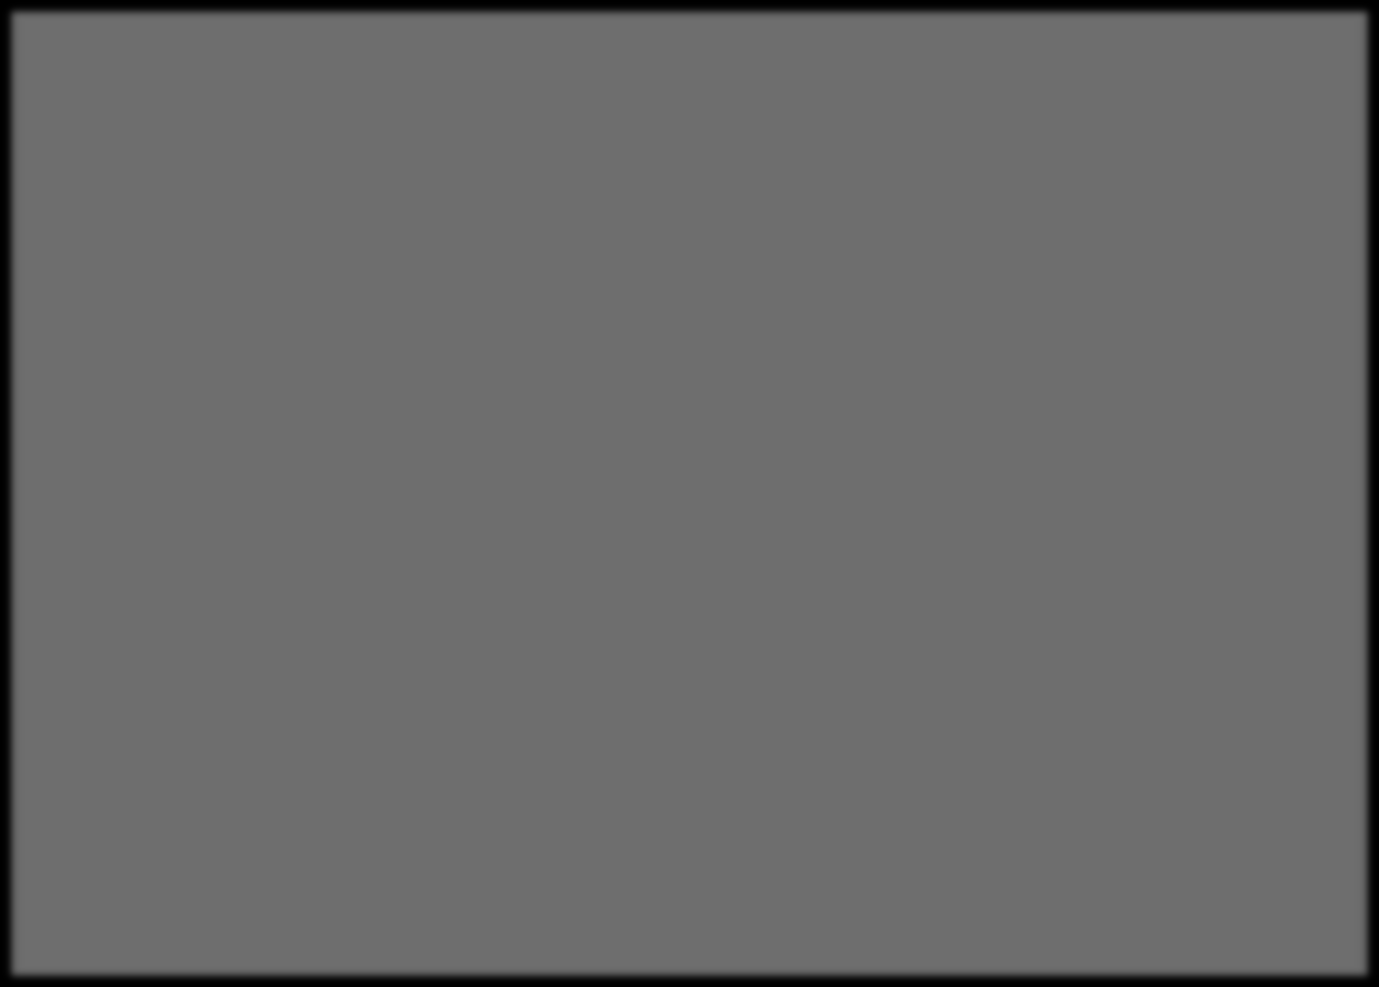 Akfen GYO İzmir İbis Otel Mimari Proje Kat Alan ve Fonksiyonları Otel Bloğu - Mimari Projeye Göre 2. Bodrum kat 595,73 m² Sığınak Alanları, Isı Merkezi, Su Depoları, Ve Teknik Alanlar 1.